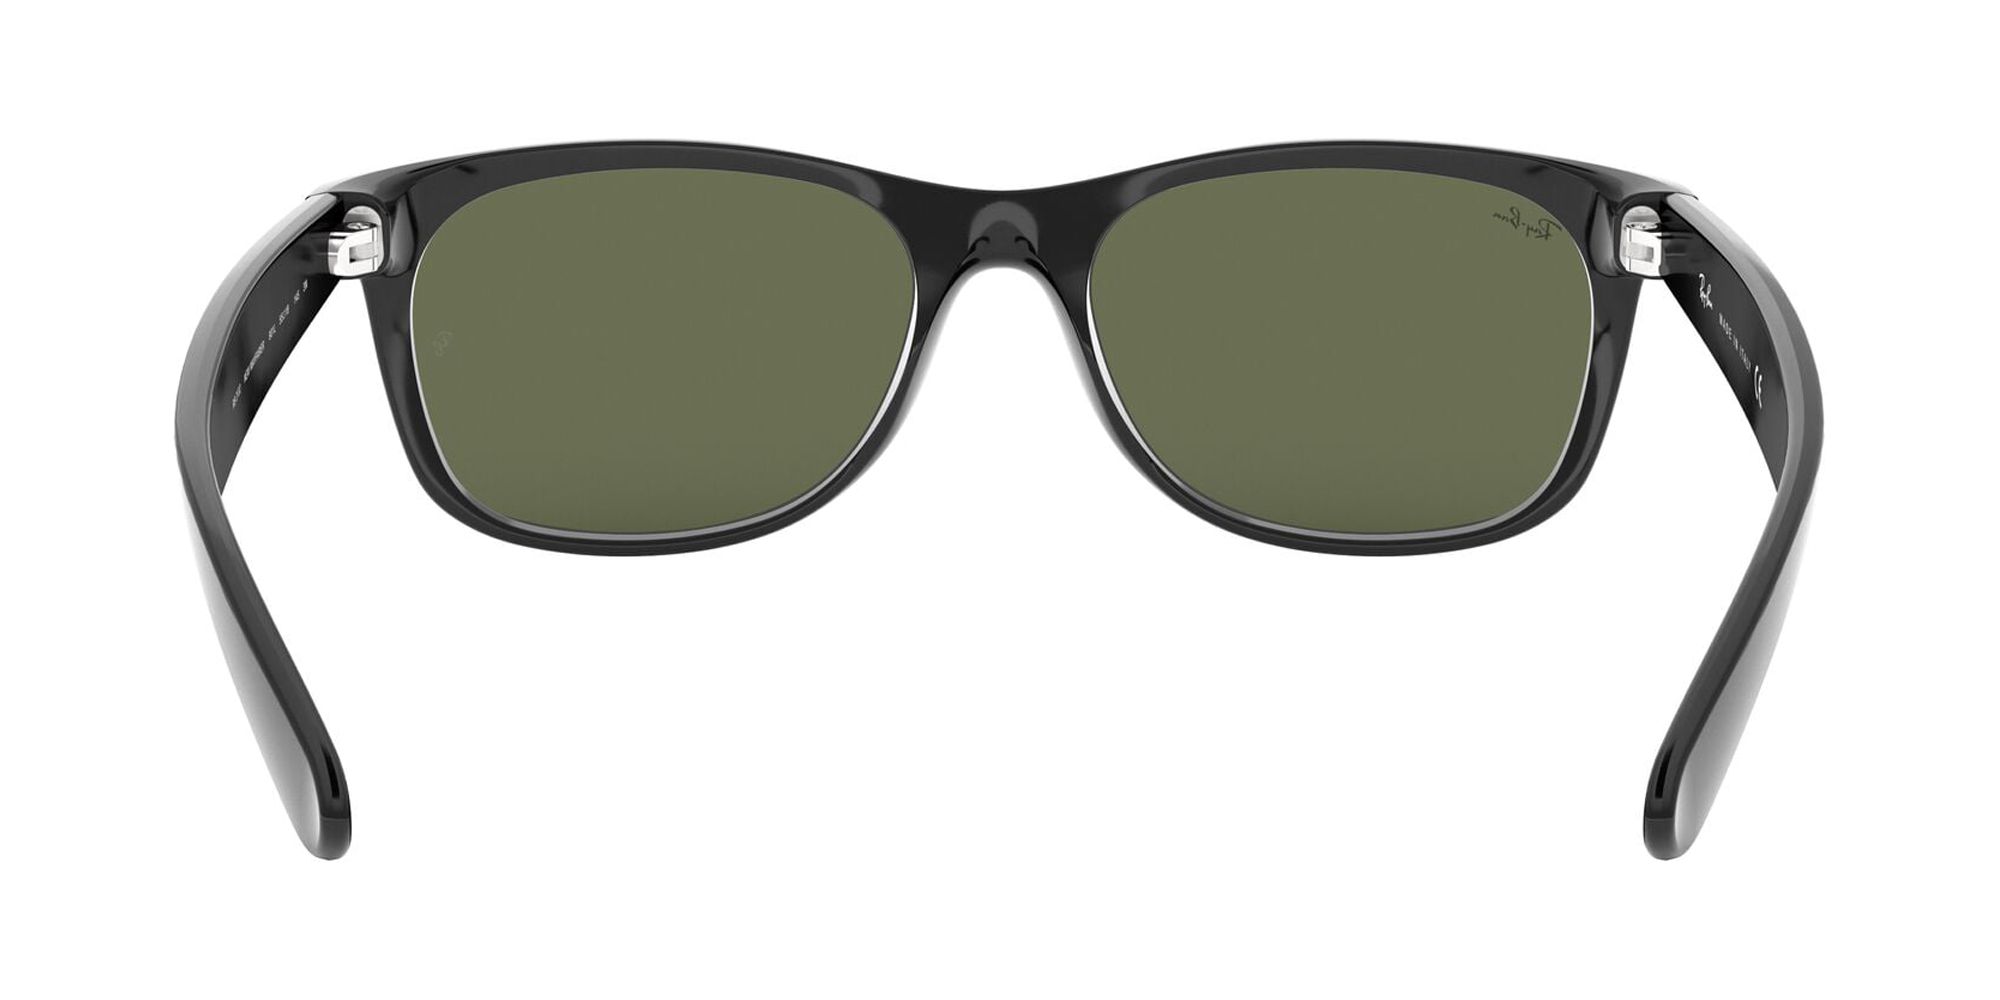 Ray-Ban RB2132 New Wayfarer Adult Sunglasses - image 3 of 12